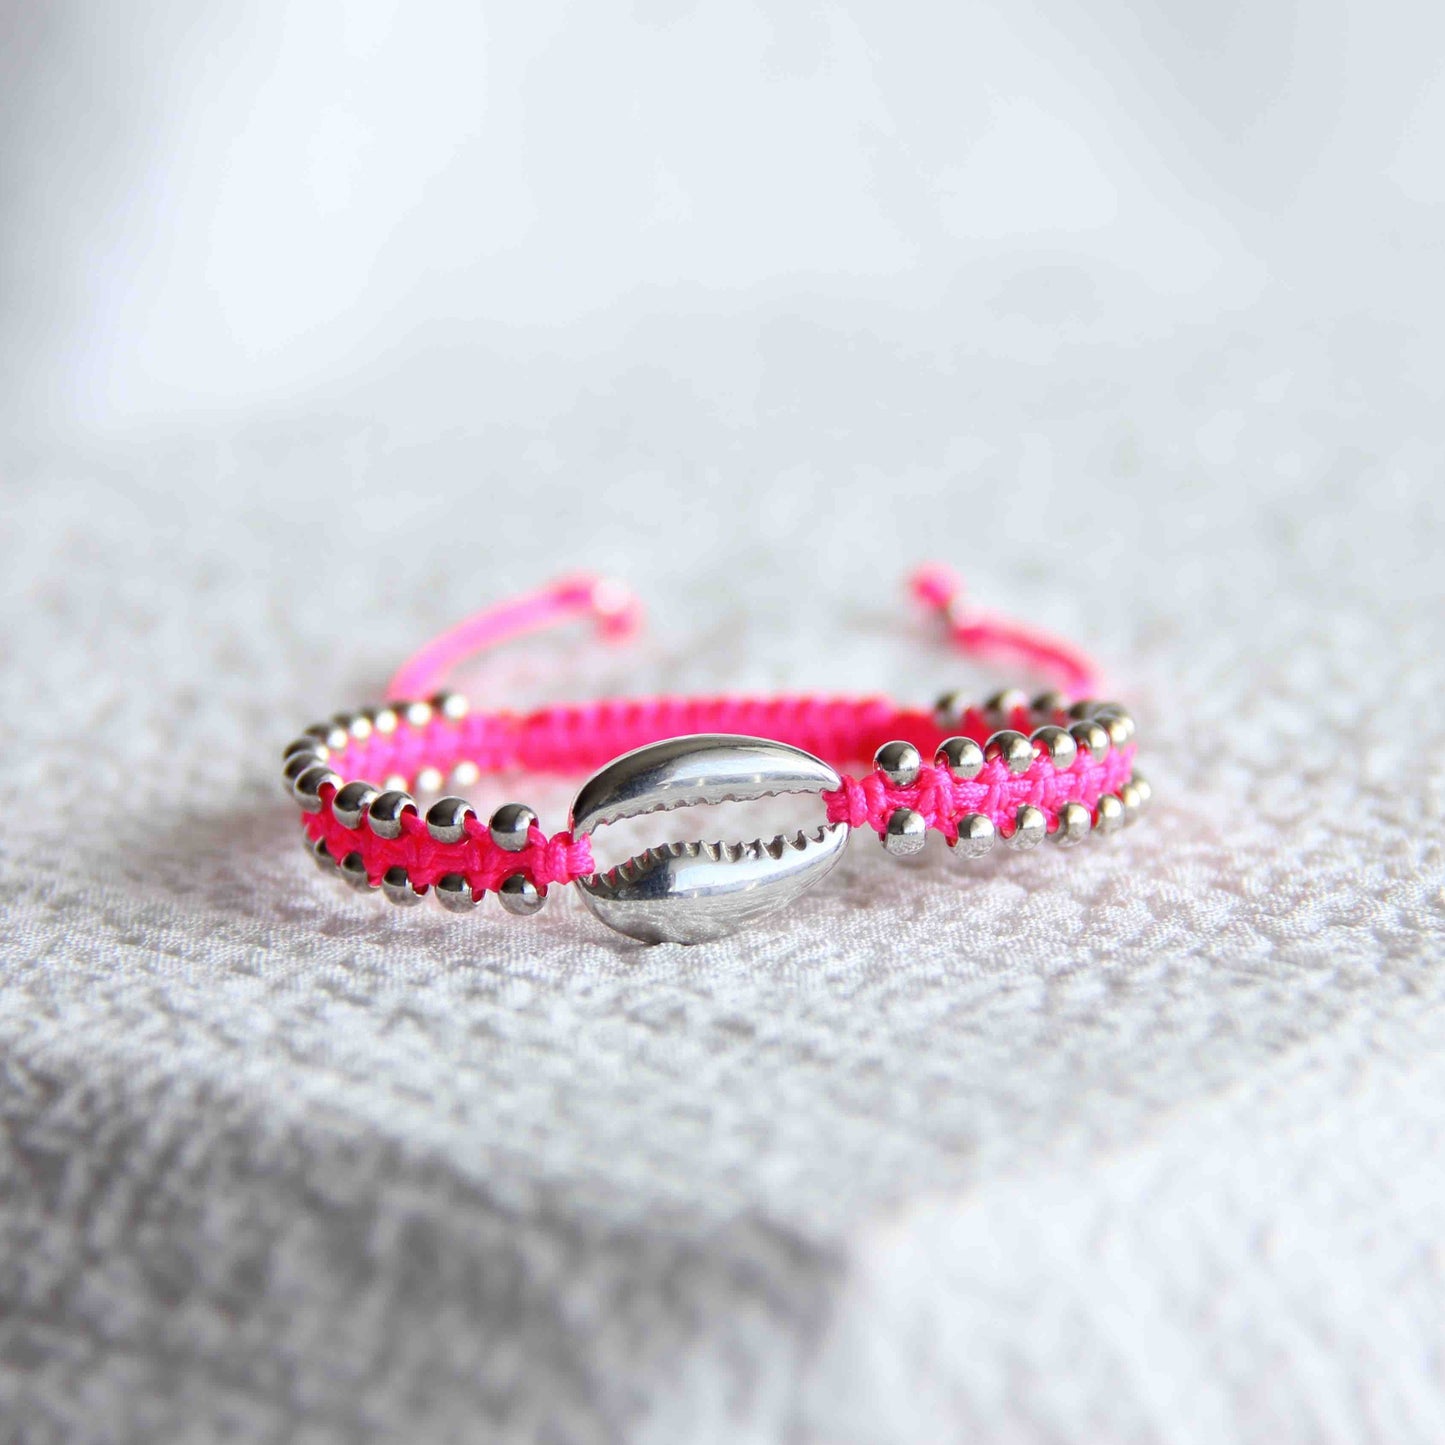 Neon Pink Shelly Bracelet, Shell Bracelet, Silver Beaded Bracelets, Minimal Silver Bracelet, Silver Jewelry, Minimal Bracelets